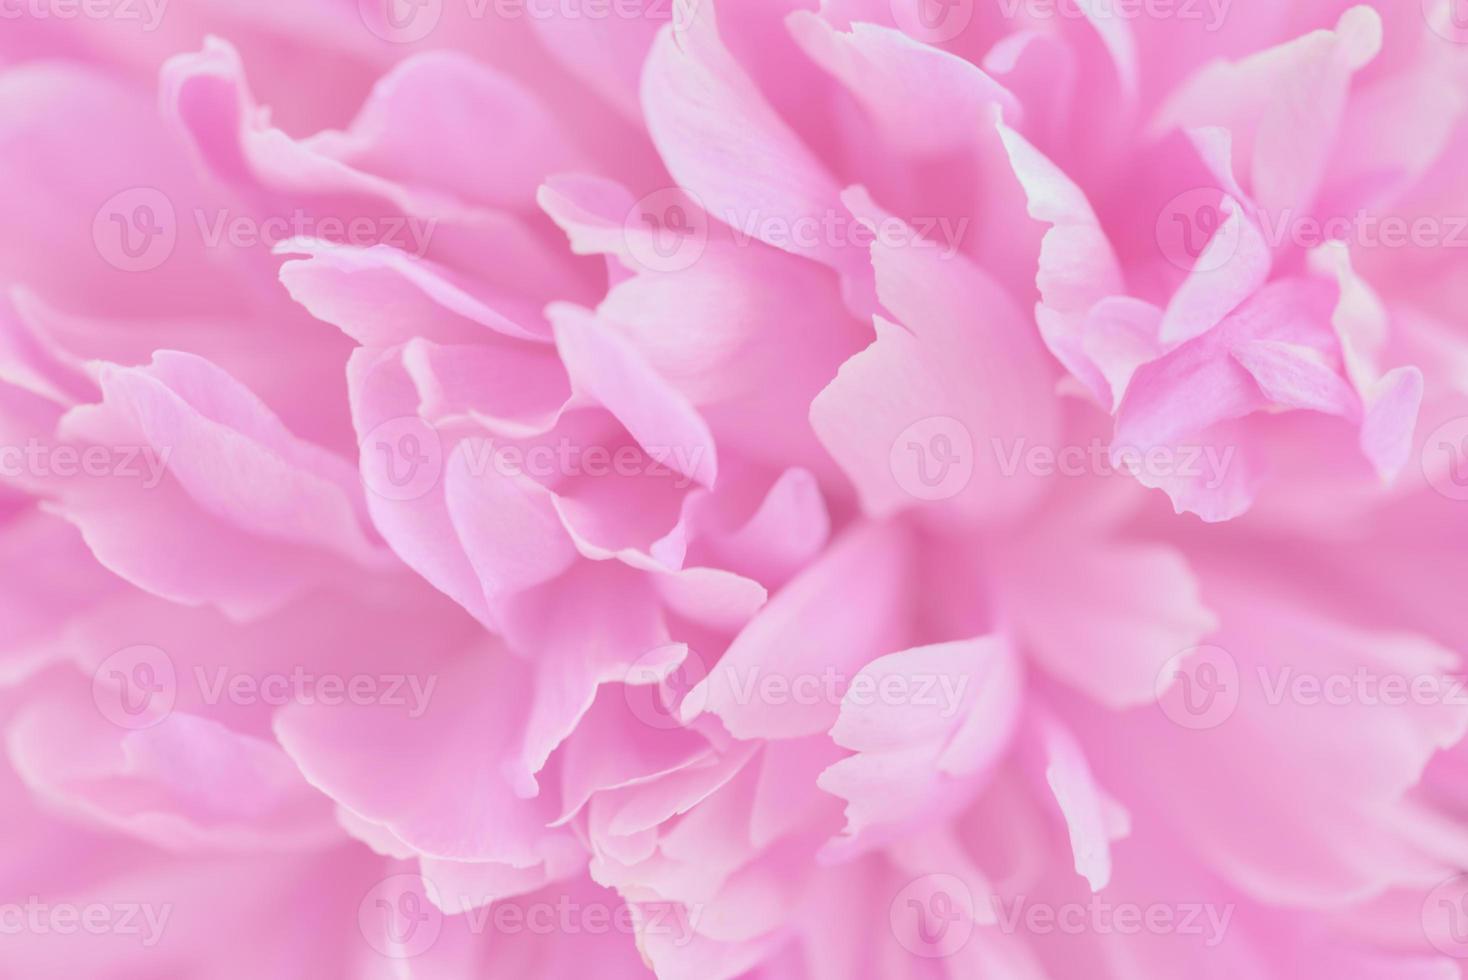 pétalas de rosa com foco desfocado foto